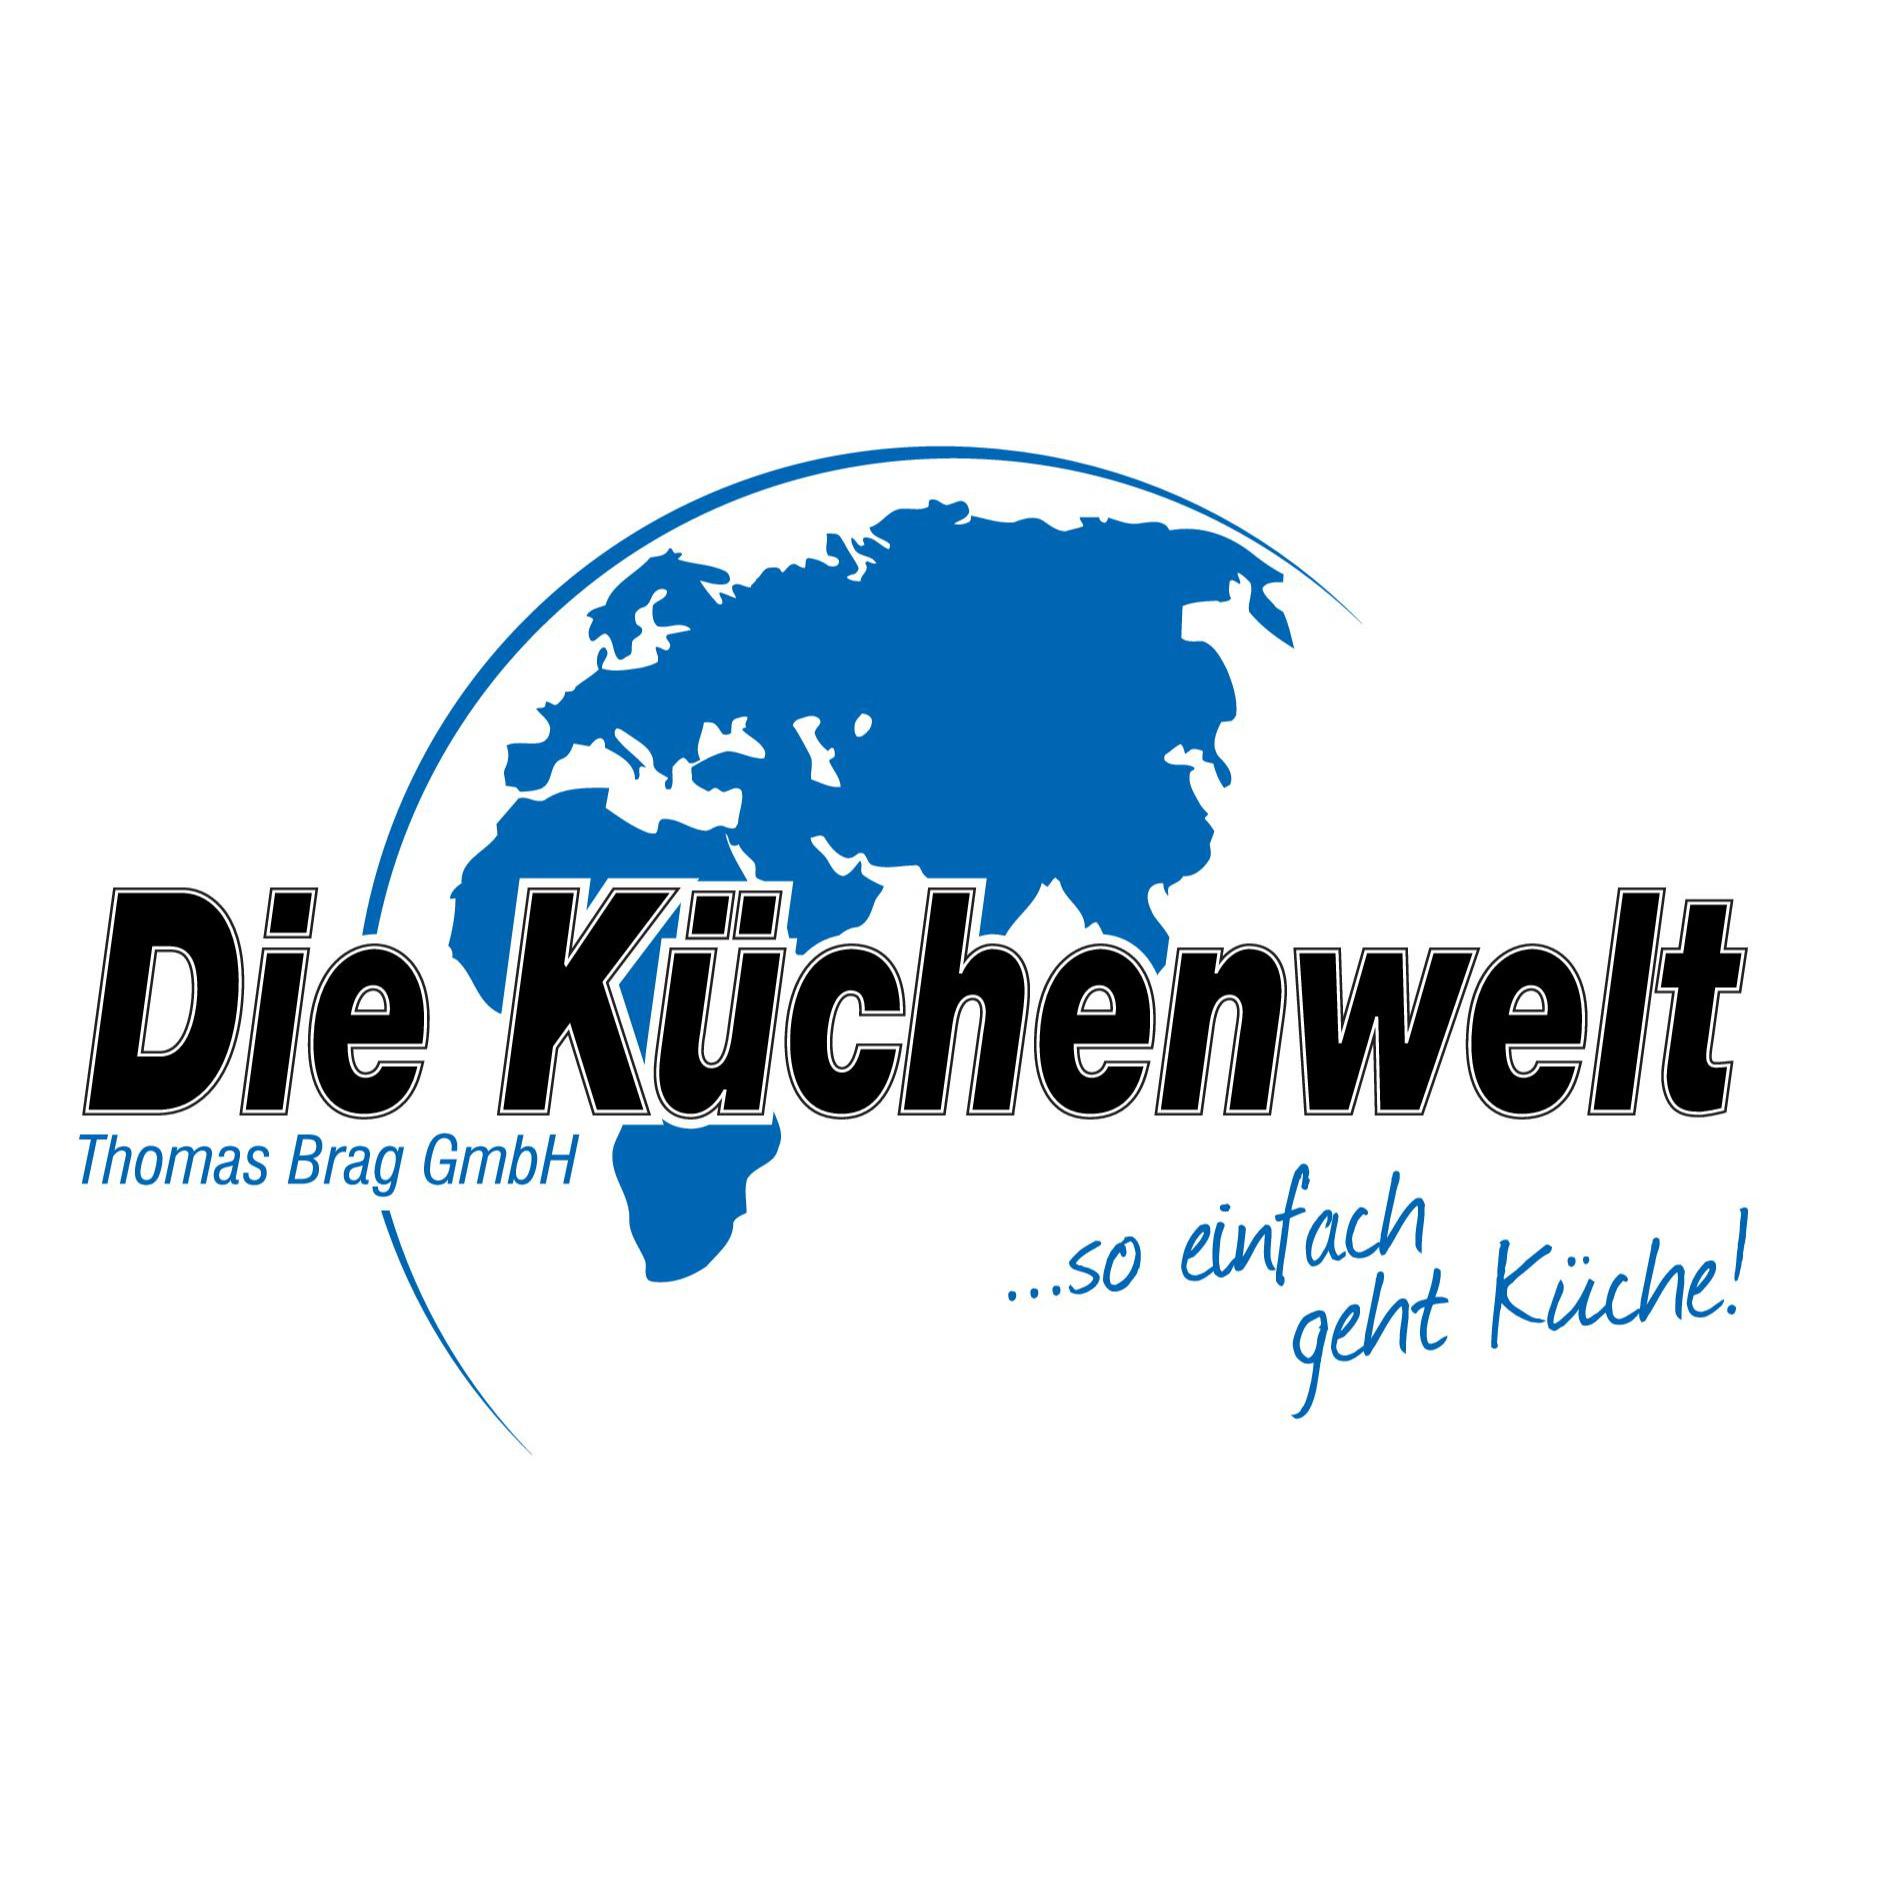 Die Küchenwelt Thomas Brag GmbH in Duisburg - Logo